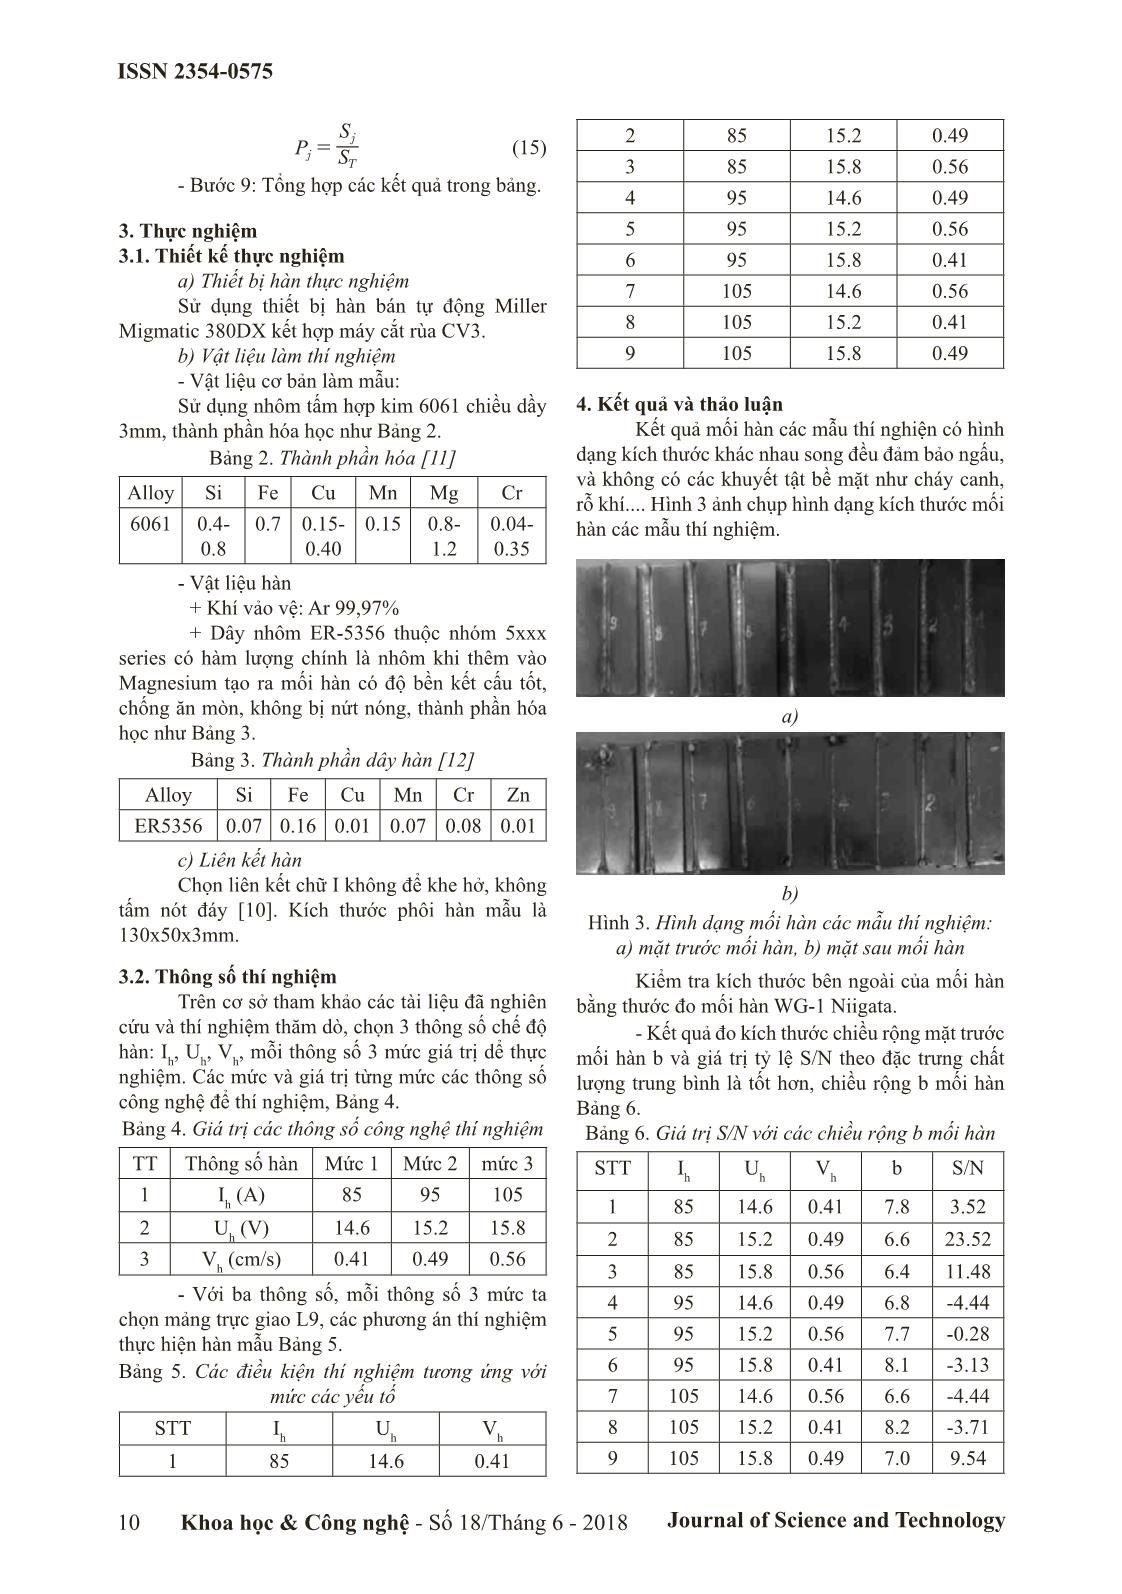 Tối ưu hóa thông số hàn để đảm bảo kích thước mối hàn trong hàn mig nhôm bằng phương pháp thiết kế thực nghiệm Taguchi trang 3